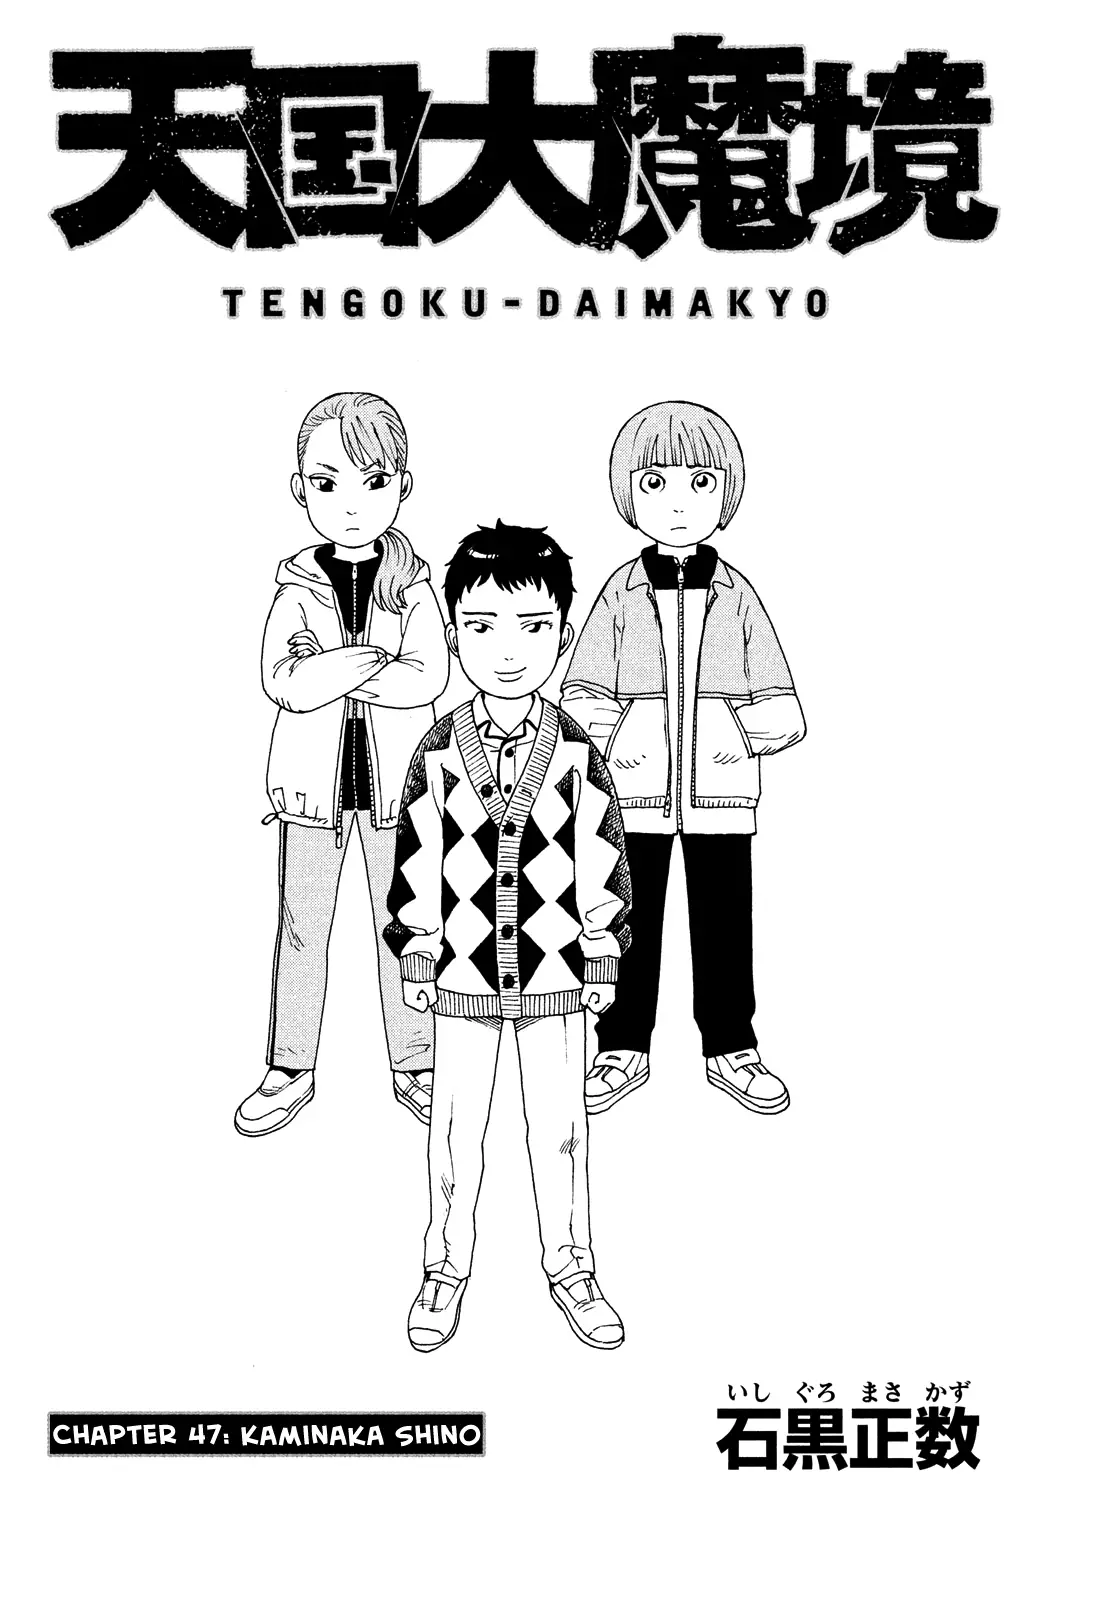 Tengoku Daimakyou - 47 page 1-e2b70ce0